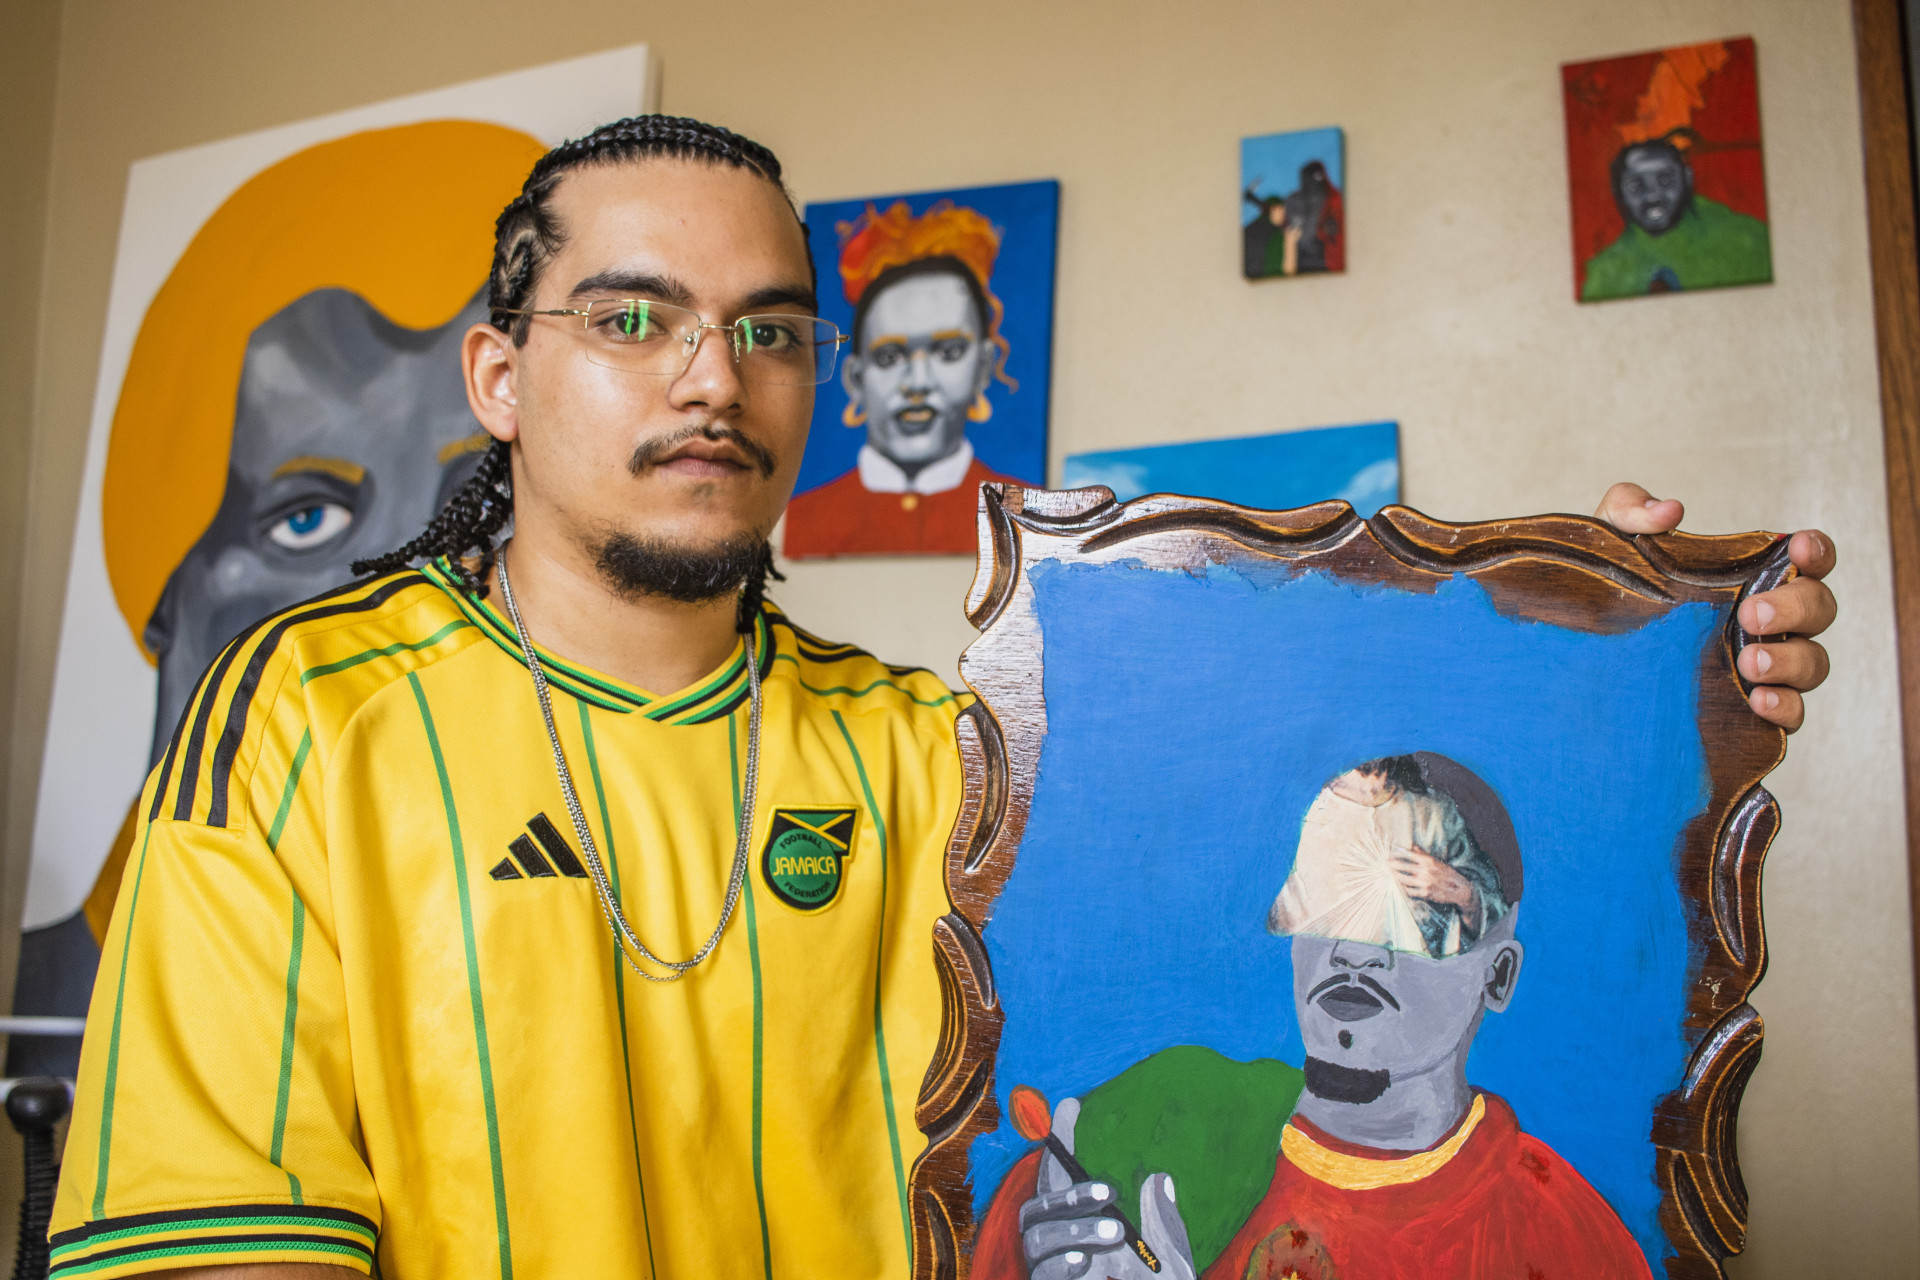 Artista visual, Blecaute, morador de Fortaleza, que tem como inspiração seu cotidiano e os símbolos de resistência para a comunidade negra (Foto: FERNANDA BARROS)